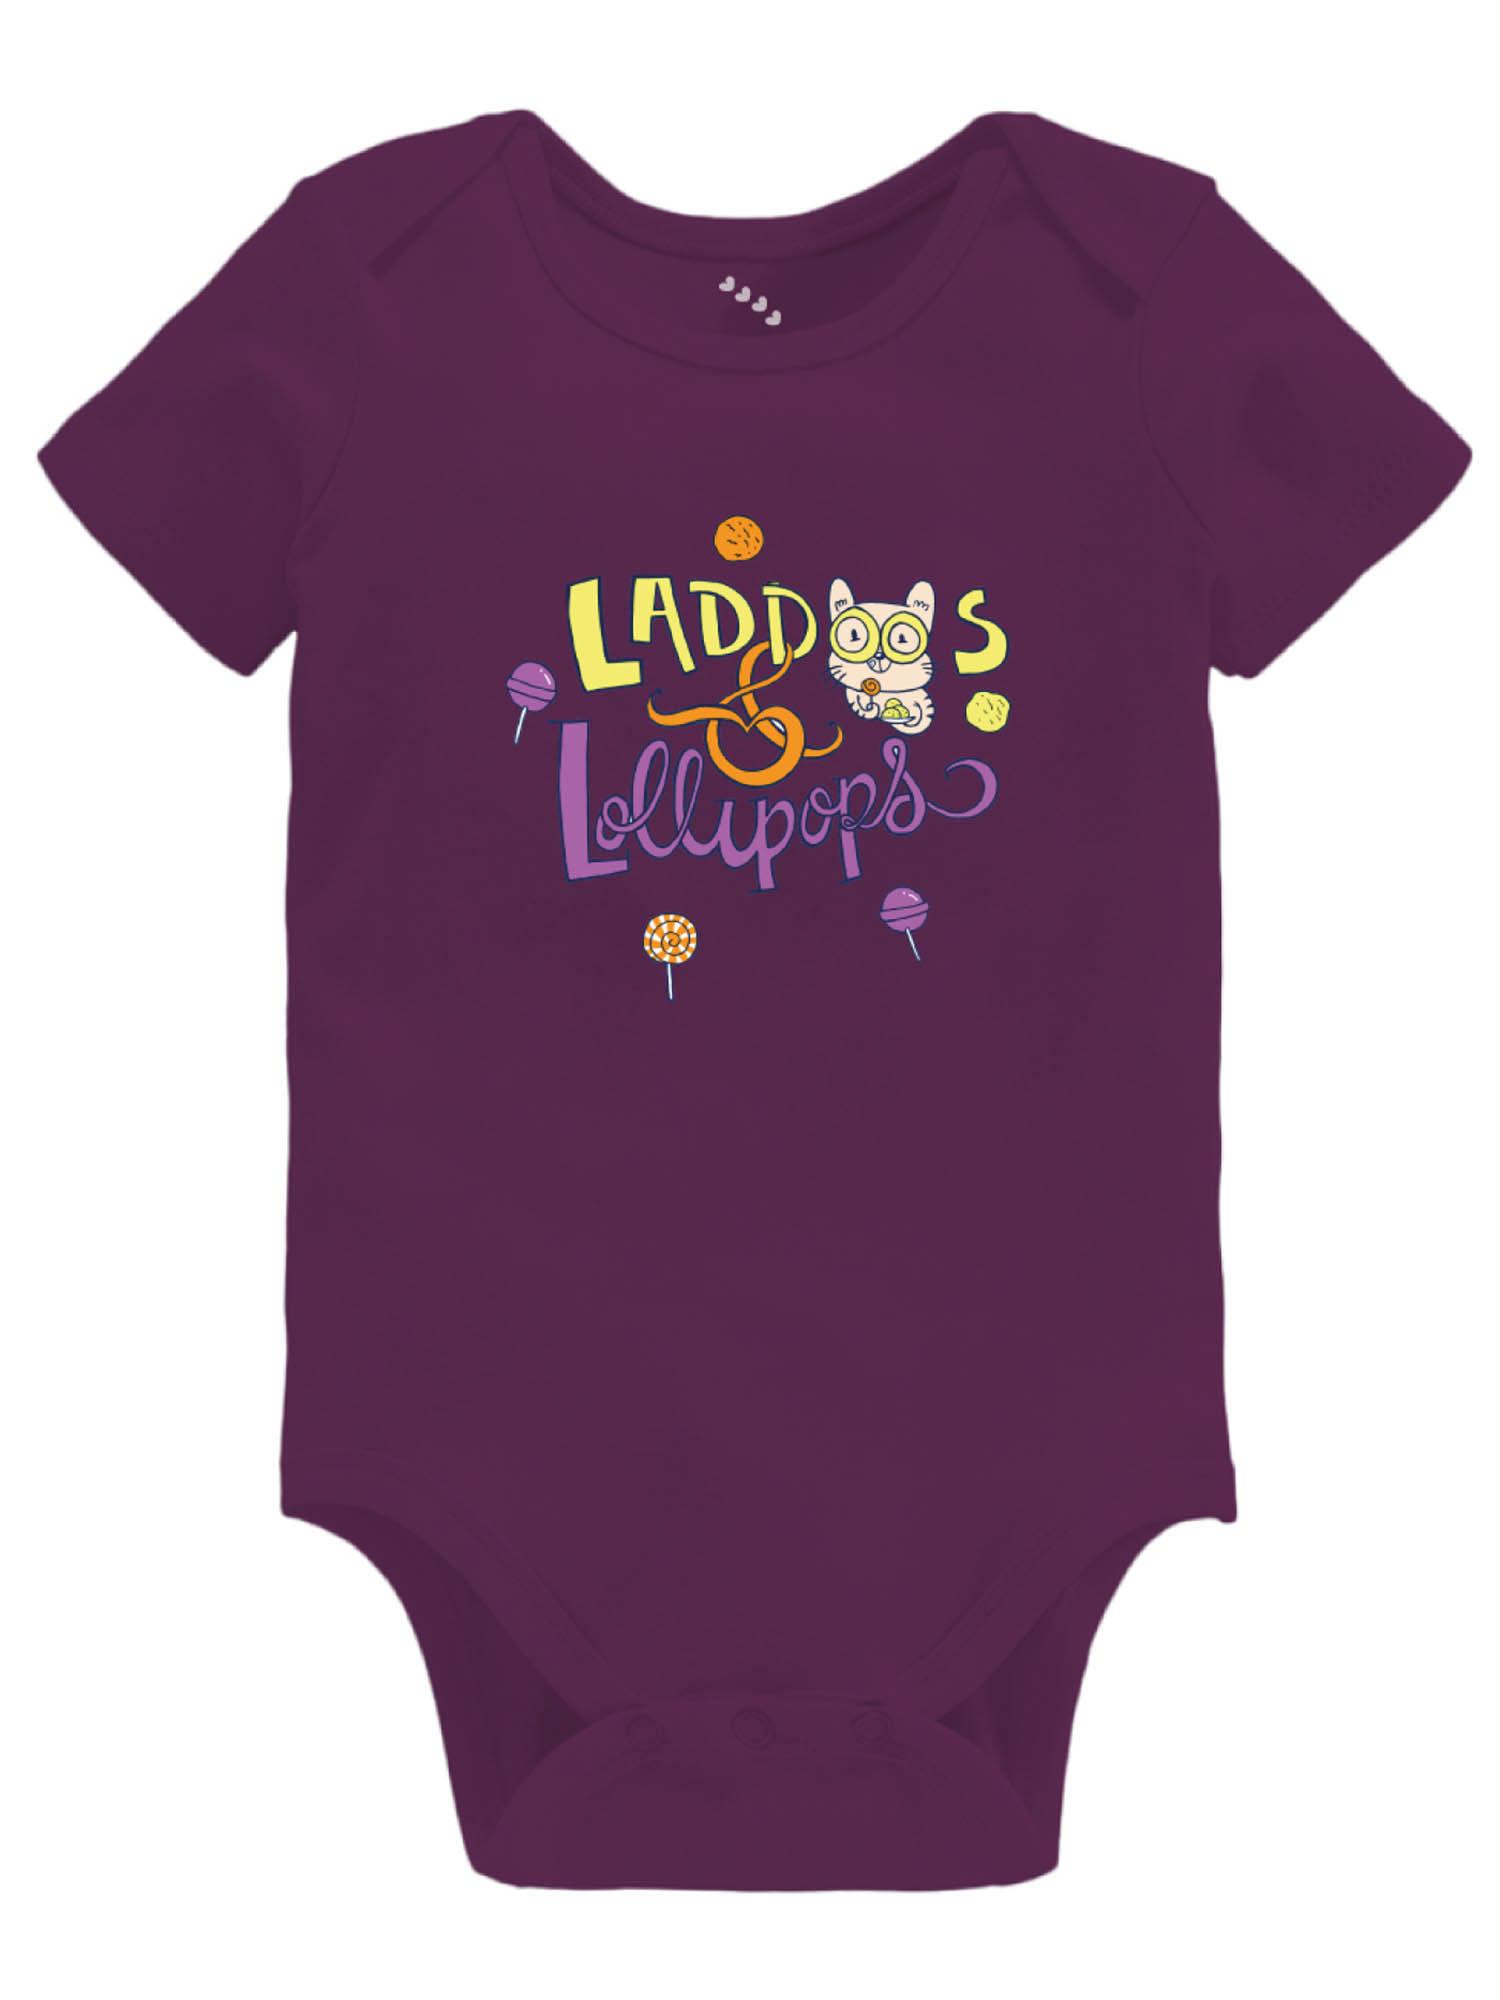 laddoos and lollipops baby printed onesie - purple